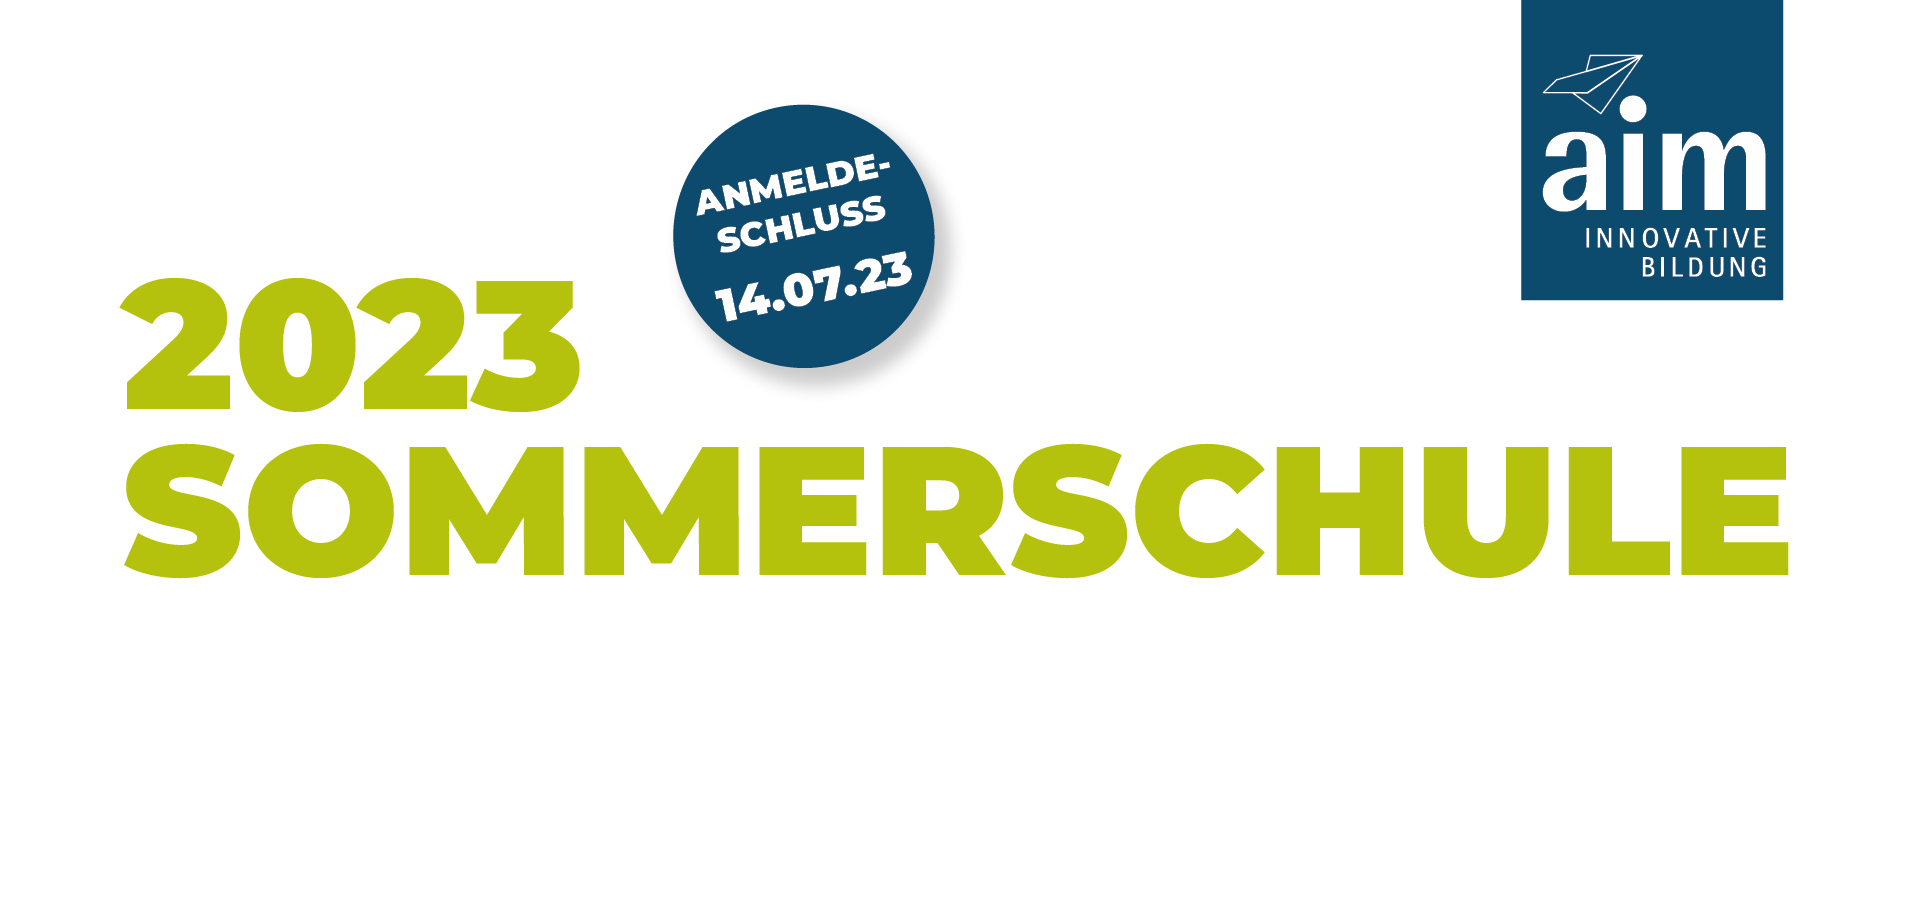 Sommerschule 2023, Anmeldeschluss am 14.07.2023